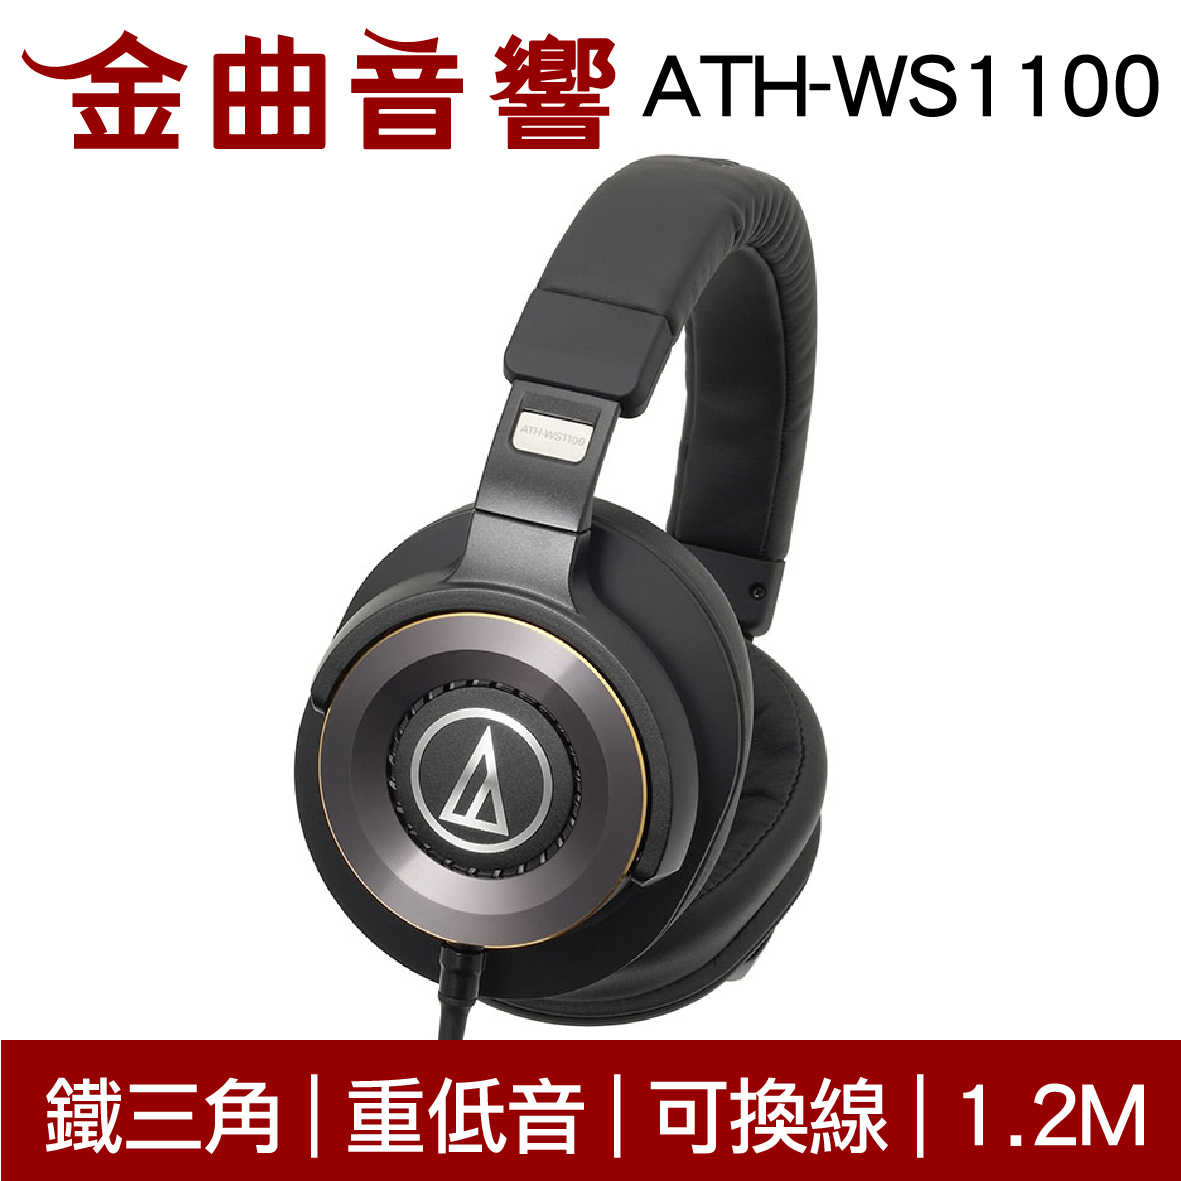 鐵三角 ATH-WS1100 SOLID BASS HiRes 可換線 耳罩式耳機 | 金曲音響